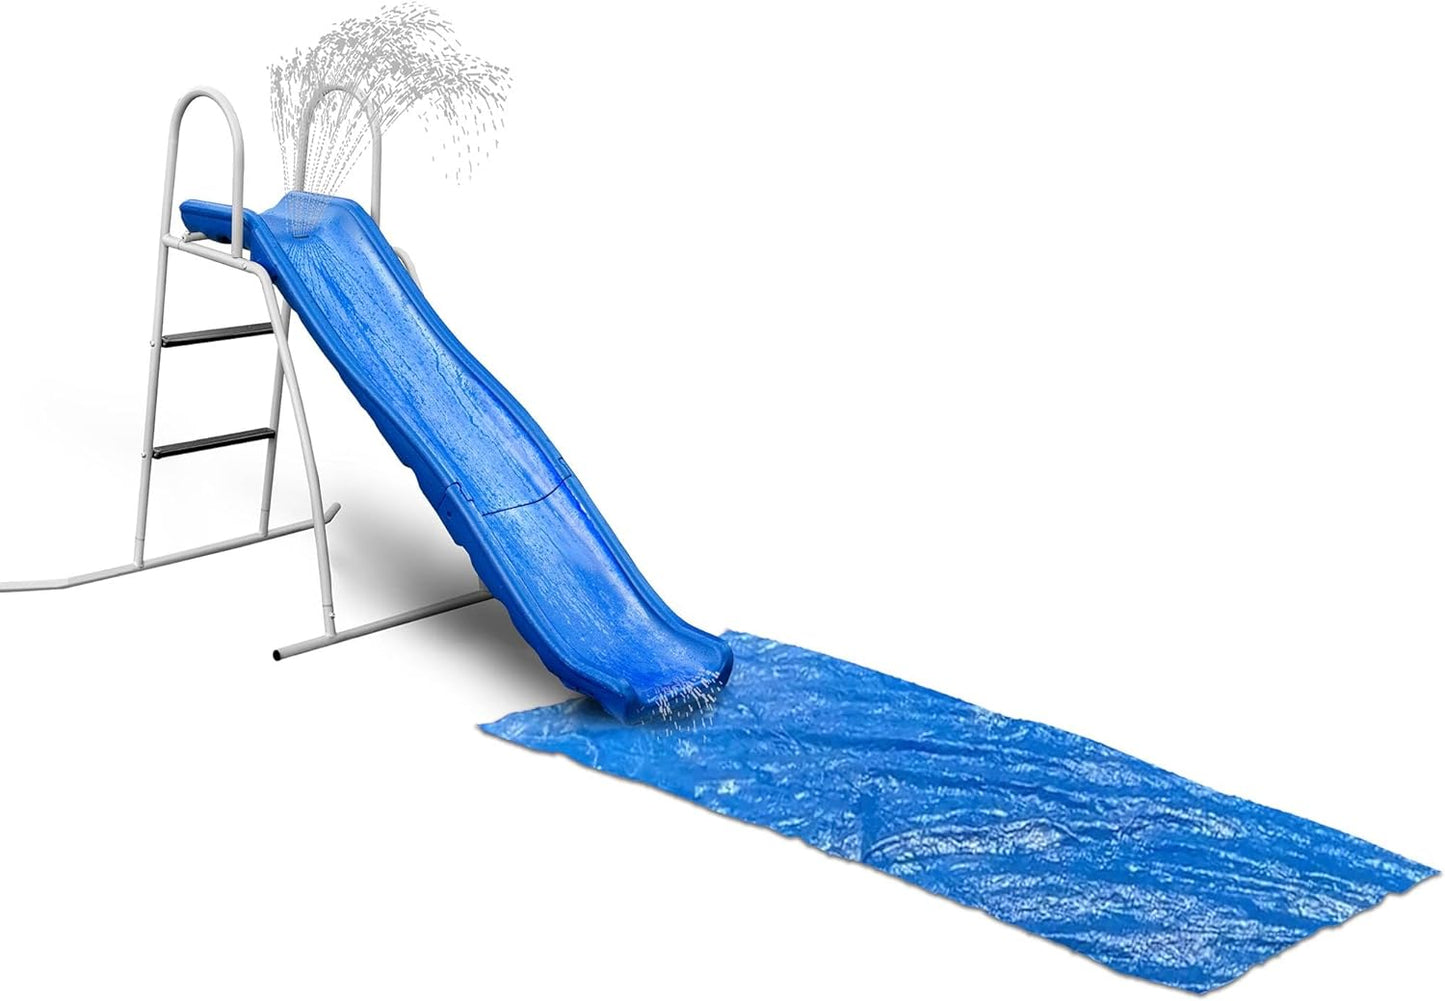 6' Water Wave Slide, Free Standing with Built in Adjustable Water Sprinkler and Bonus Ground Water Slide Tarp by